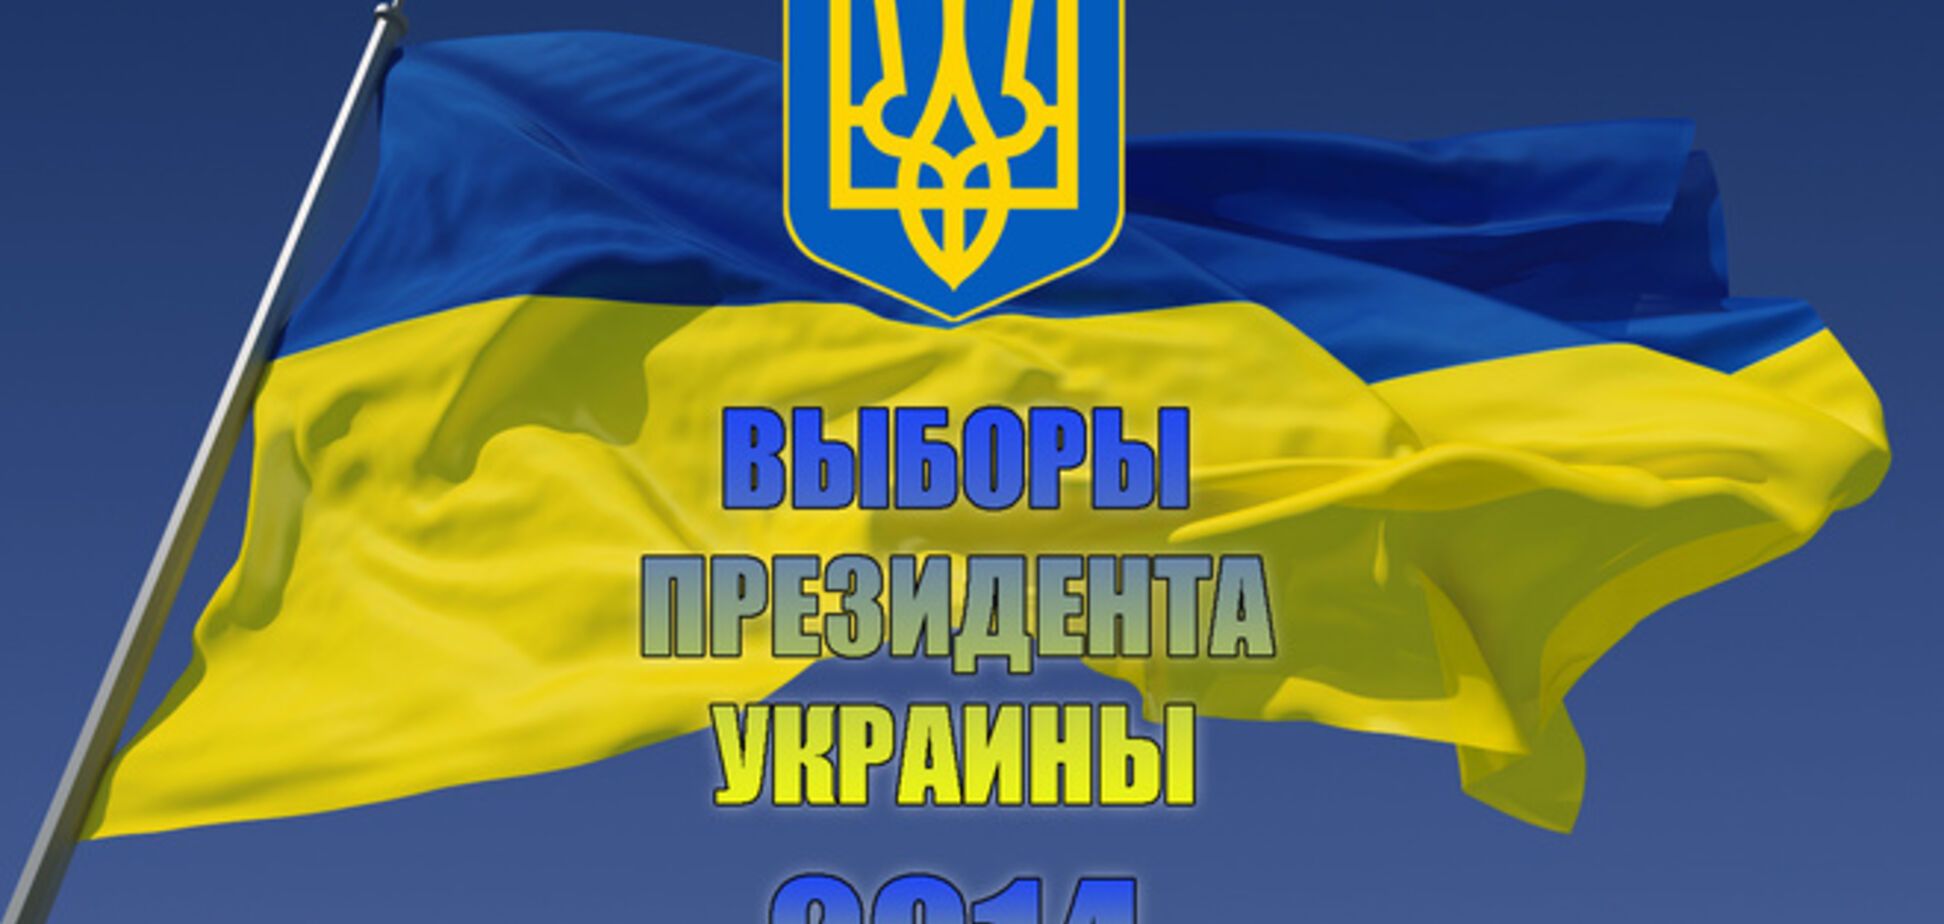 Голосовать на виборах 25 травня готові 84% українців - опитування